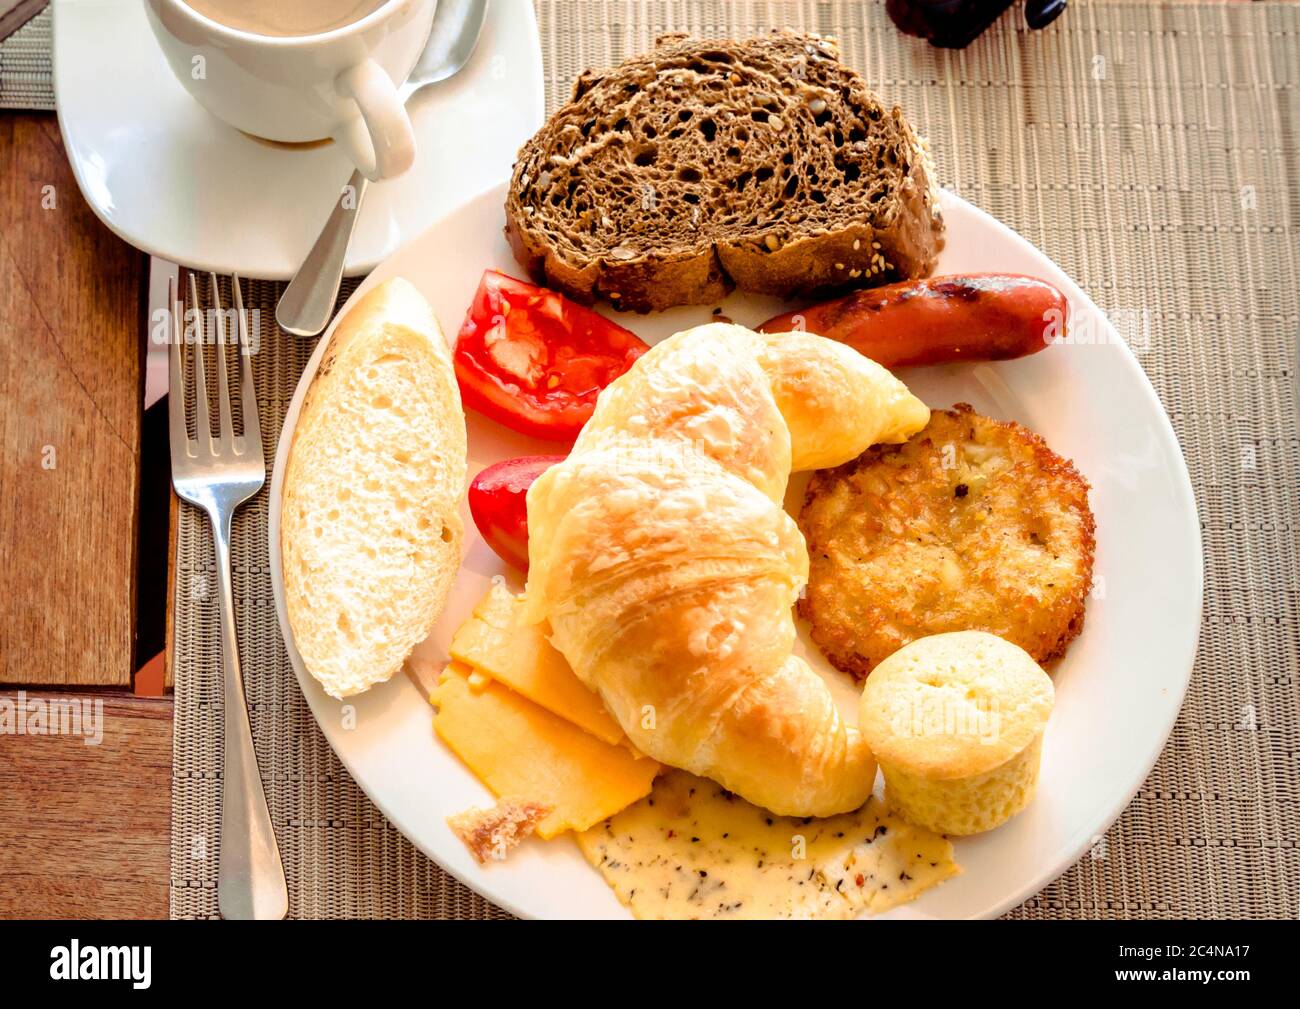 Frühstück im Café mit einer Tasse Kaffee und Croissant, Brot, Käse, Tomaten auf dem Teller. Stockfoto